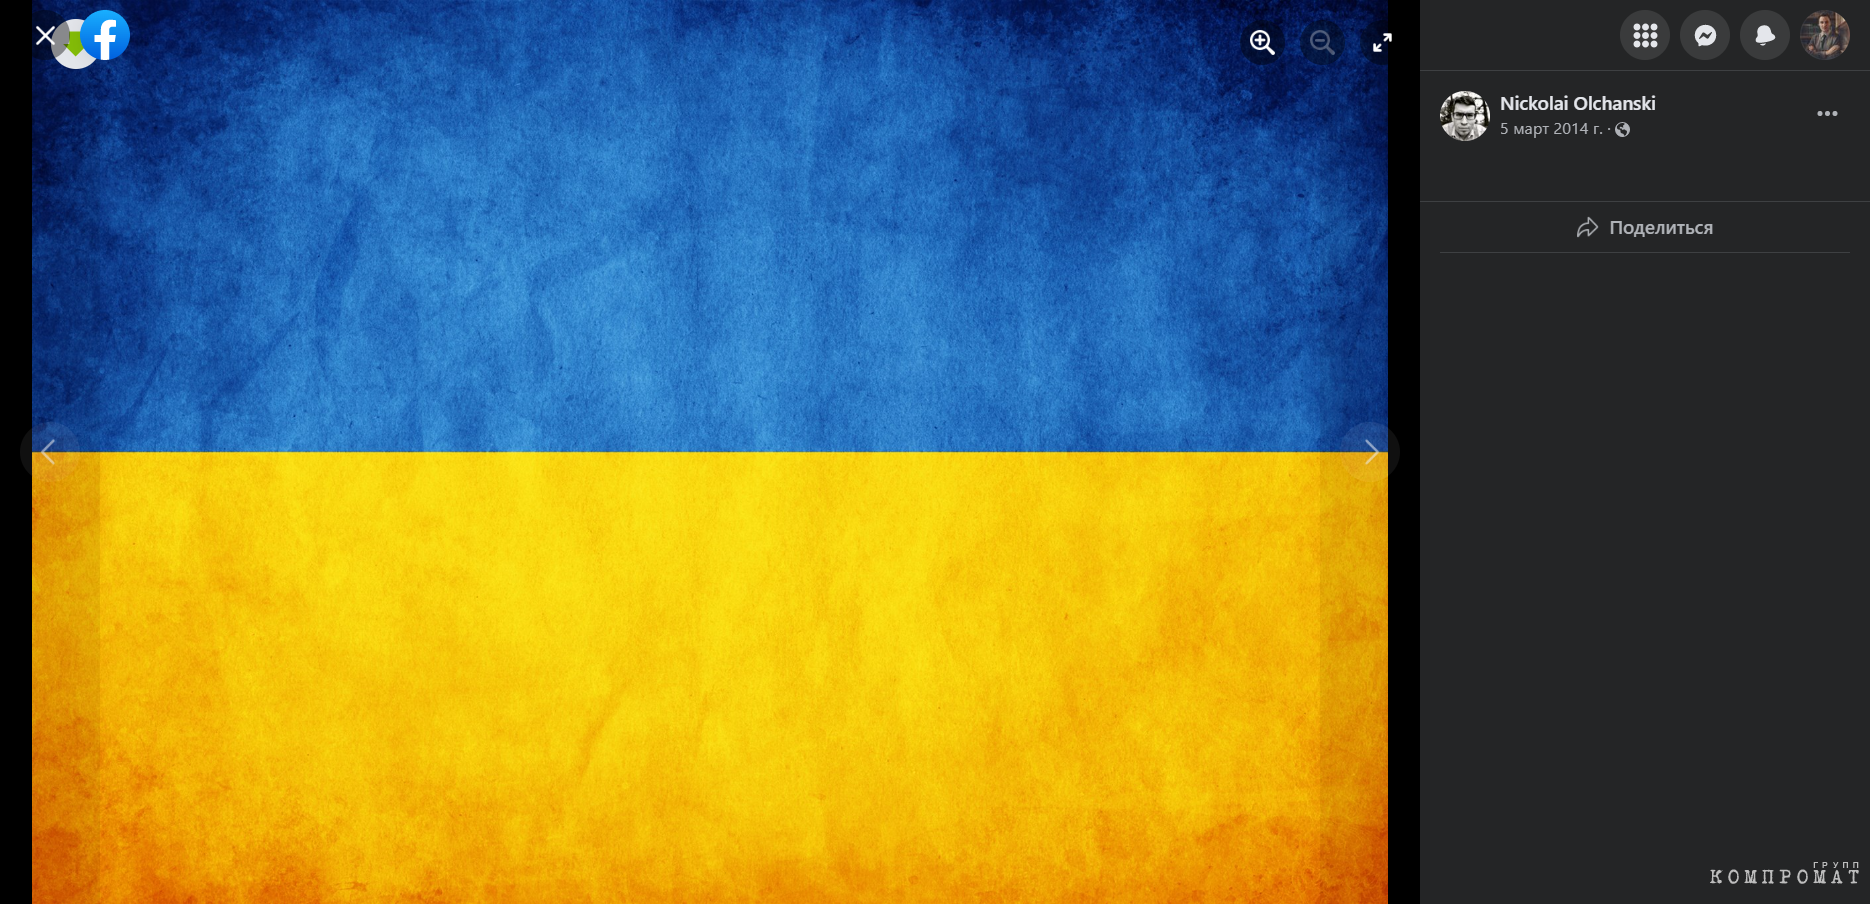 Николай Ольшанский вывешивает флаги Украины